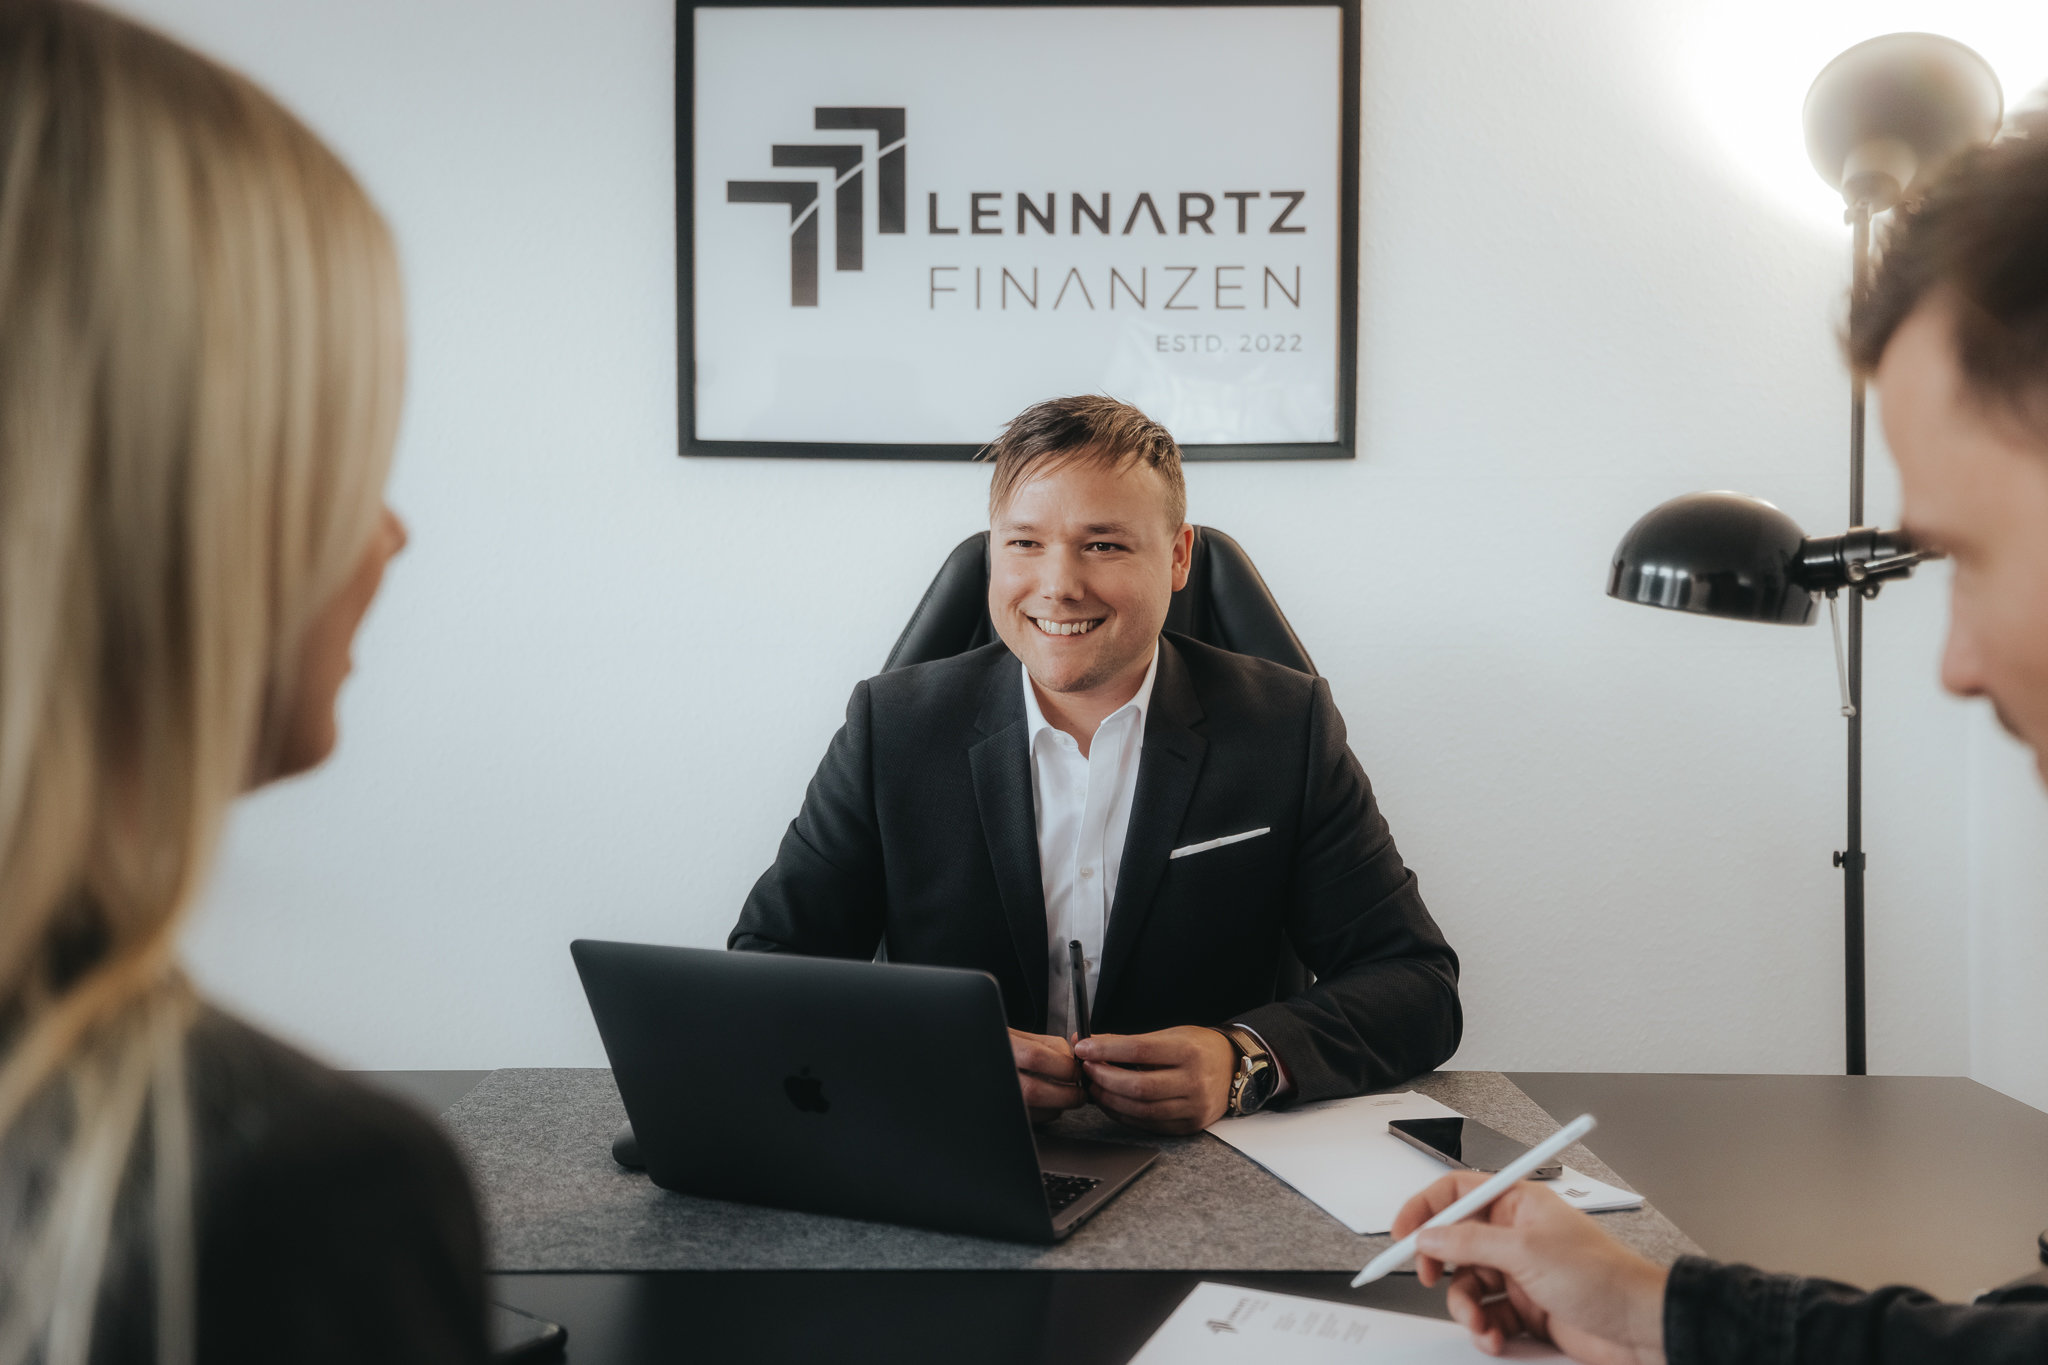 Lennartz Finanzen